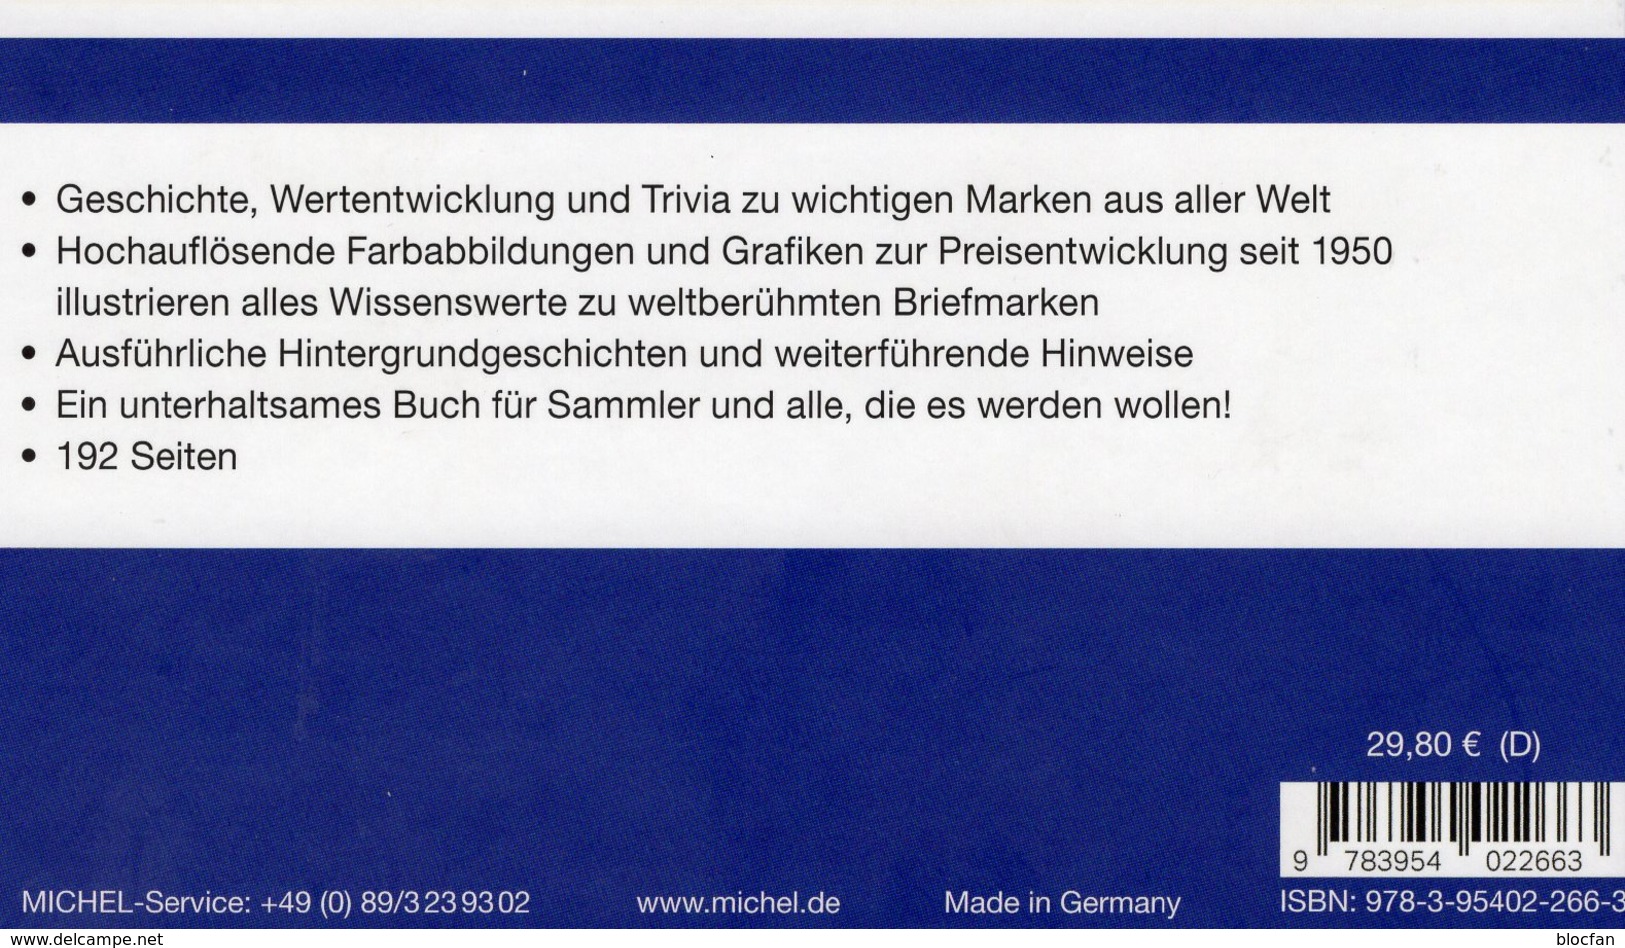 Raritäten Briefmarken Die Man Kennen Sollte MICHEL 2019 Neu 30€ Book/stamp Catalogue Of The World 978-3-95402-266-3 - Original Editions